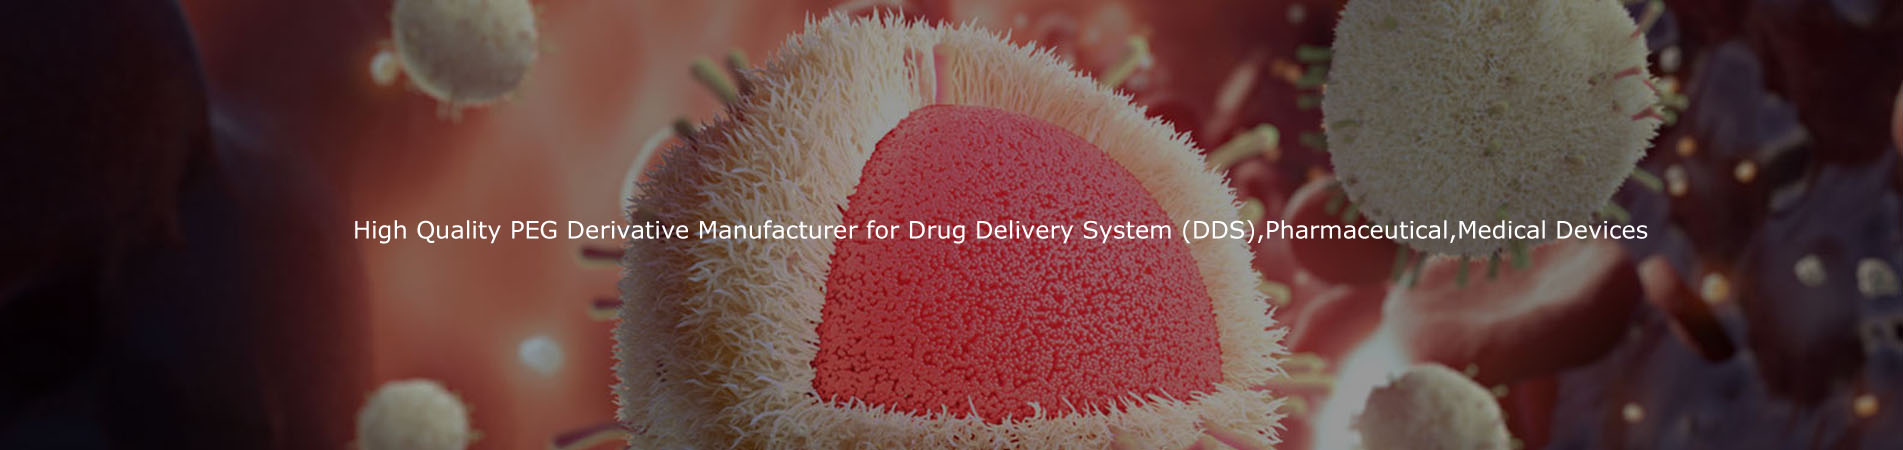 Hoogwaardige PEG-derivatieve fabrikant voor drugsbezorgingssysteem (DDS), farmaceutische, medische hulpmiddelen